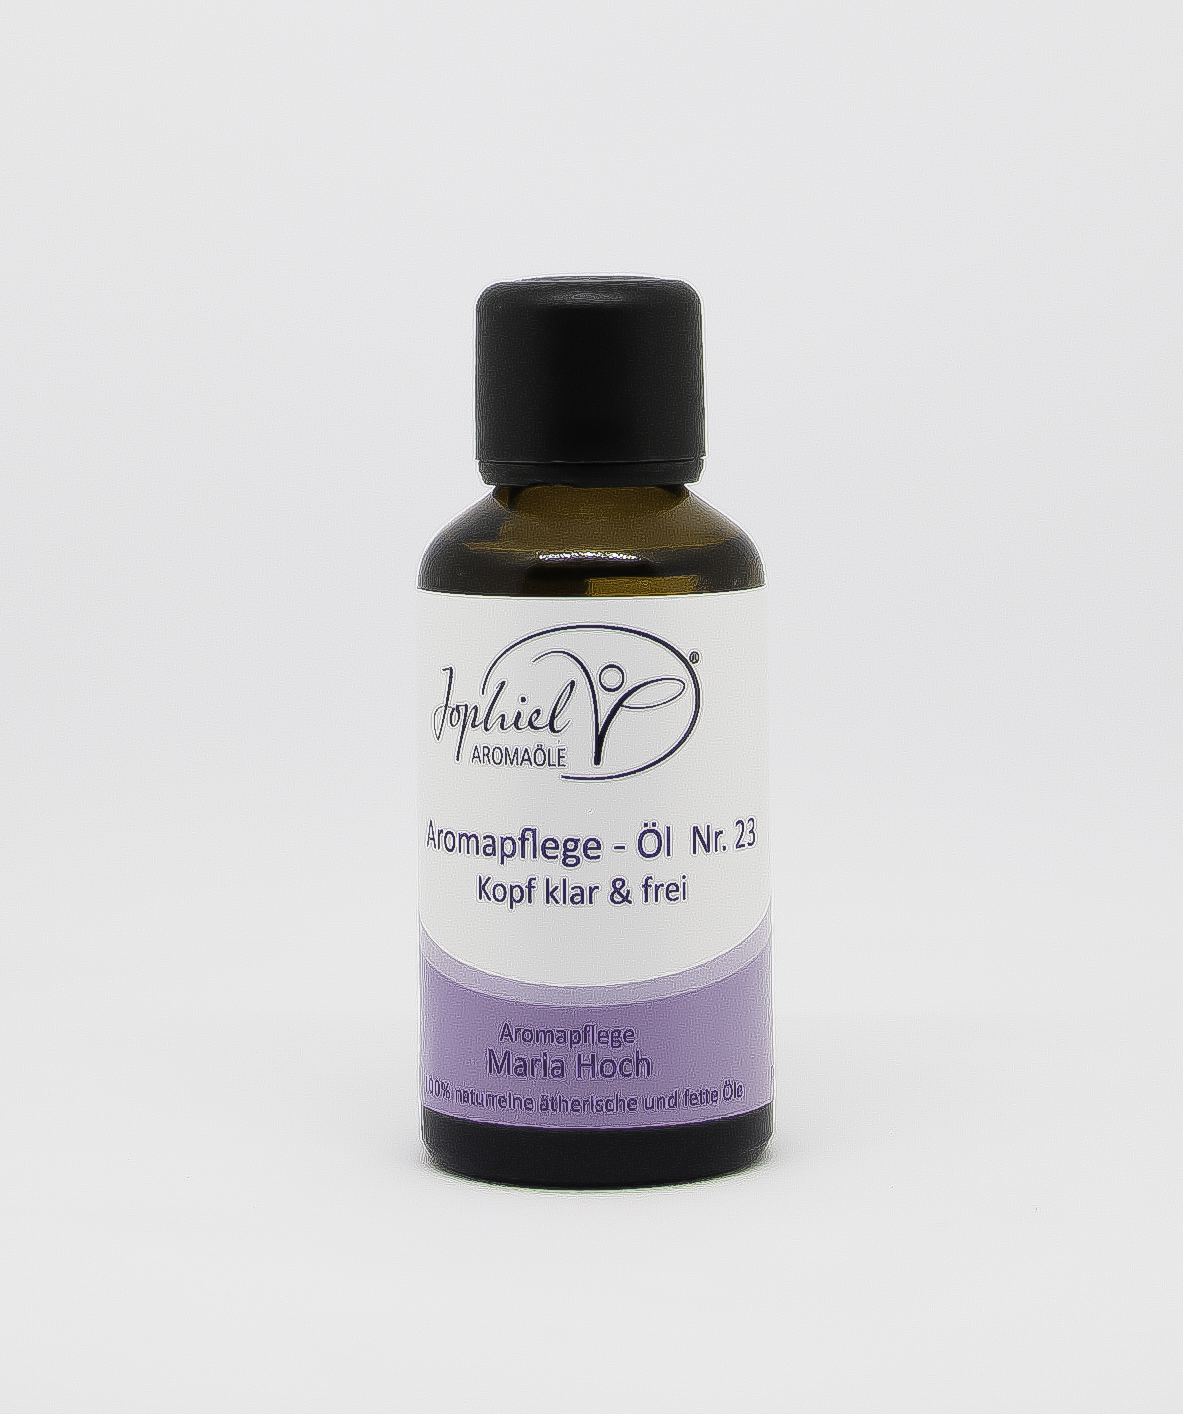 Aromapflege-Öl Nr. 23 Kopf klar & frei 10 ml Roll on   Bio